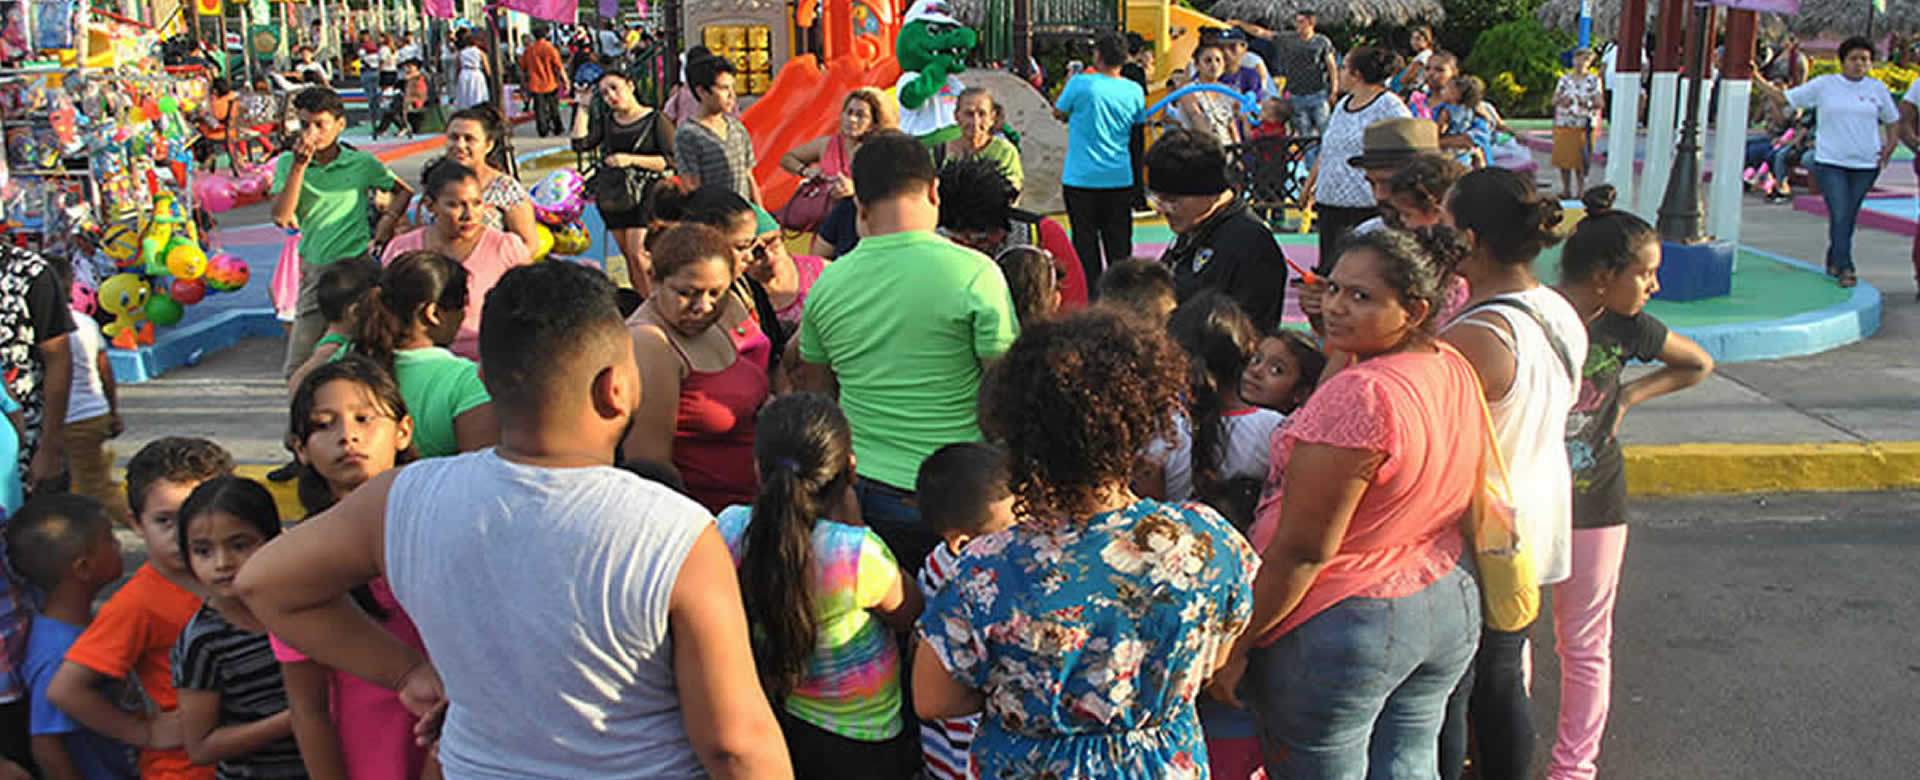 Familias disfrutan de su fin de semana en Puerto Salvador Allende 